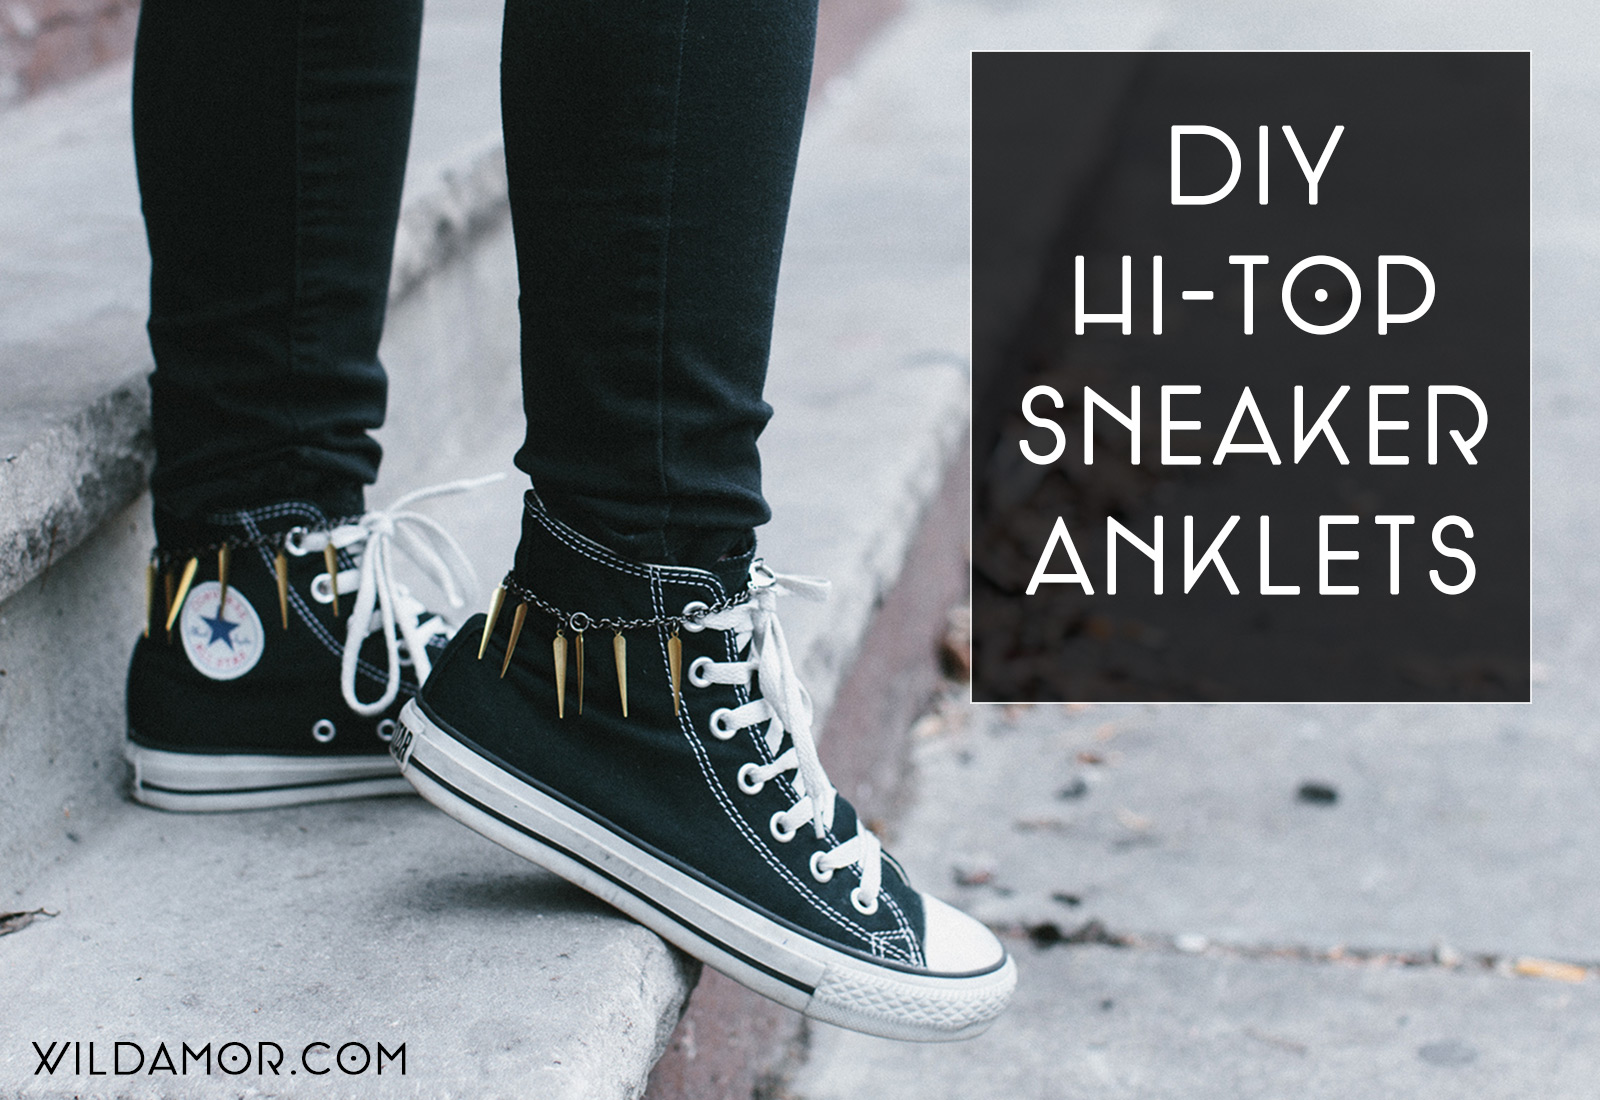 DIY Hi-Top Sneaker Anklets